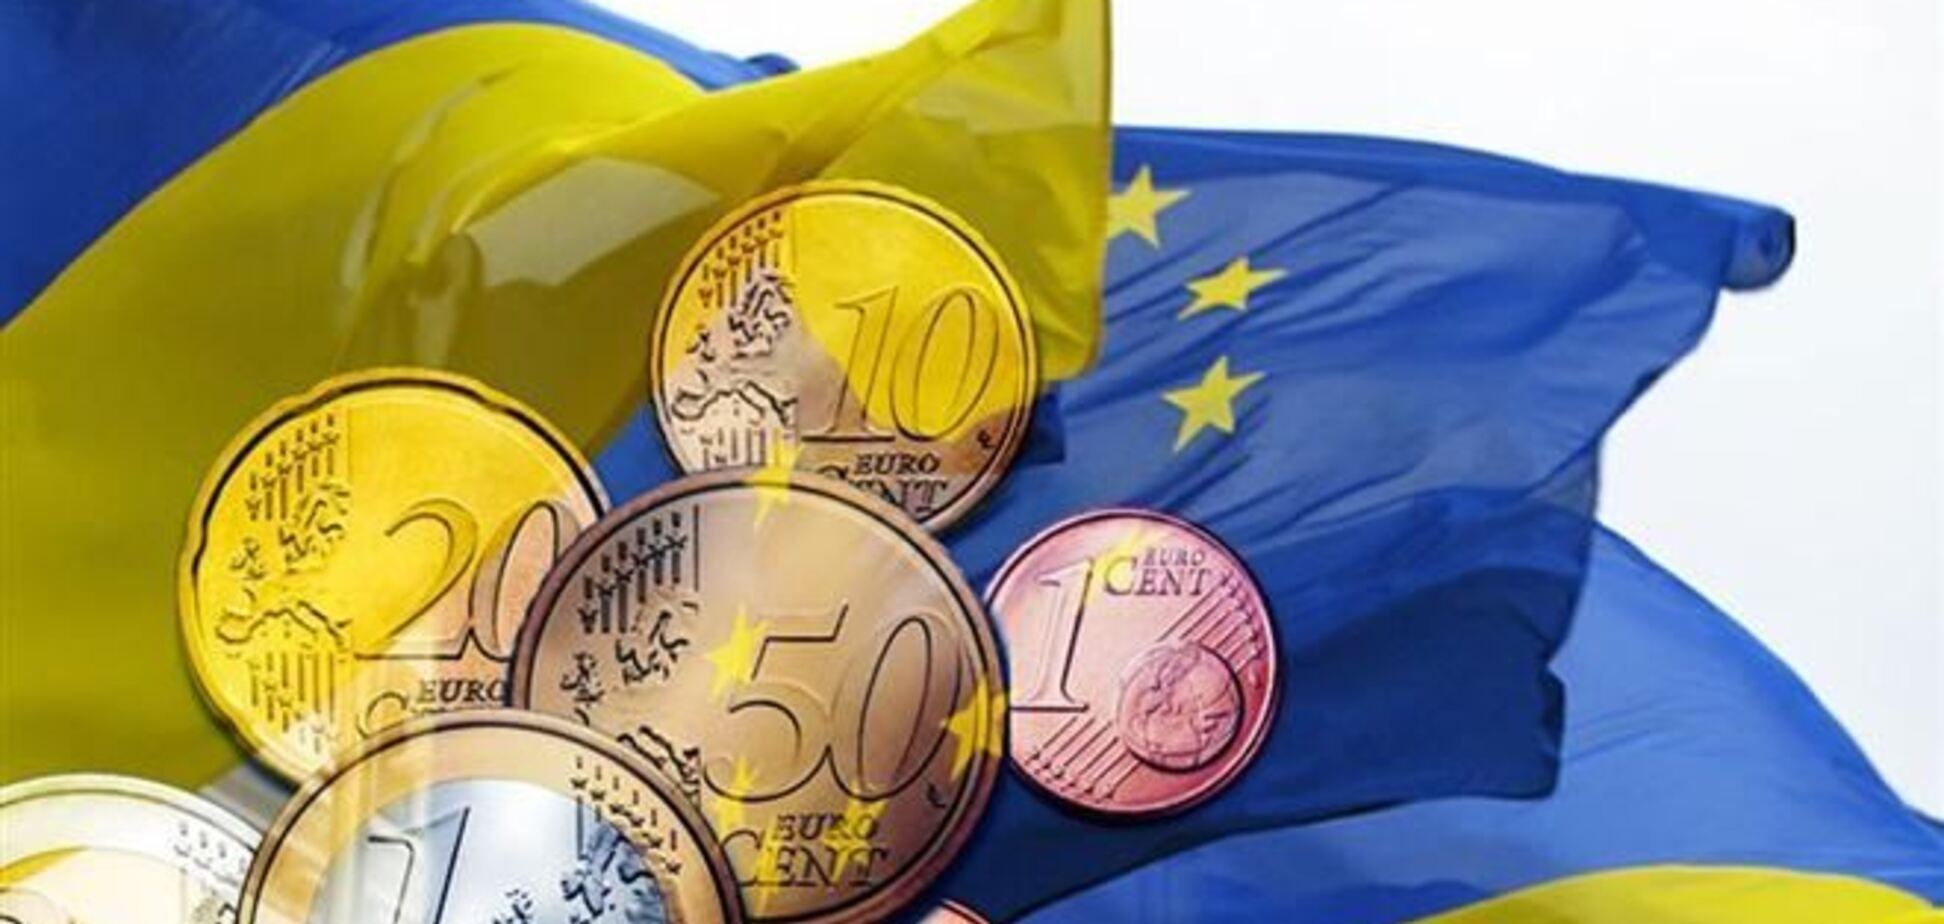 Україна до кінця 2014 року підпише економічну частину асоціацію з ЄС - посол 